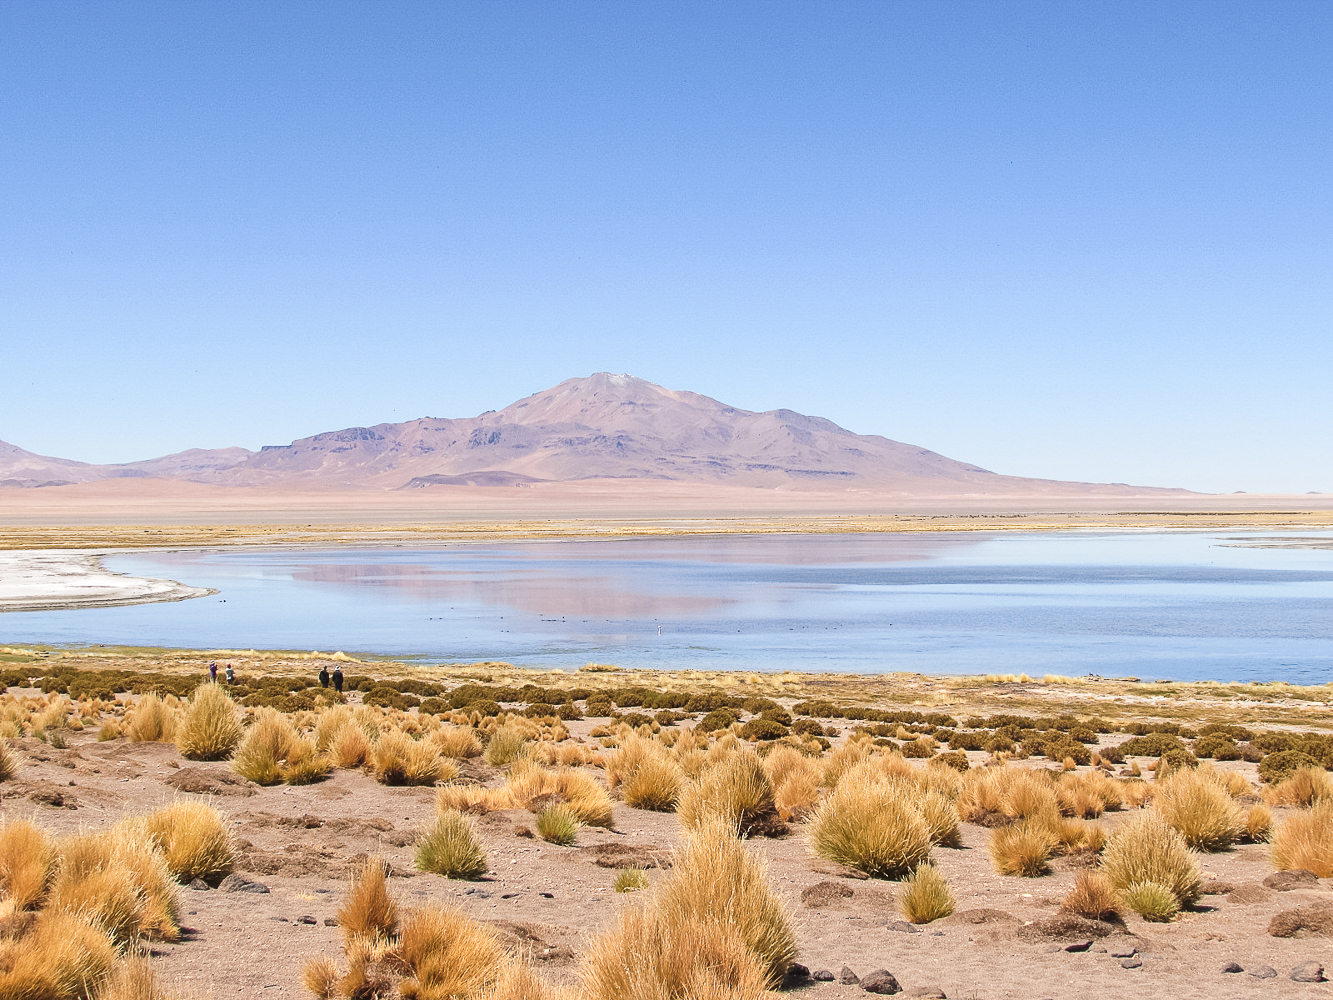 Como comprar passagem barata da LAN para o Deserto do Atacama